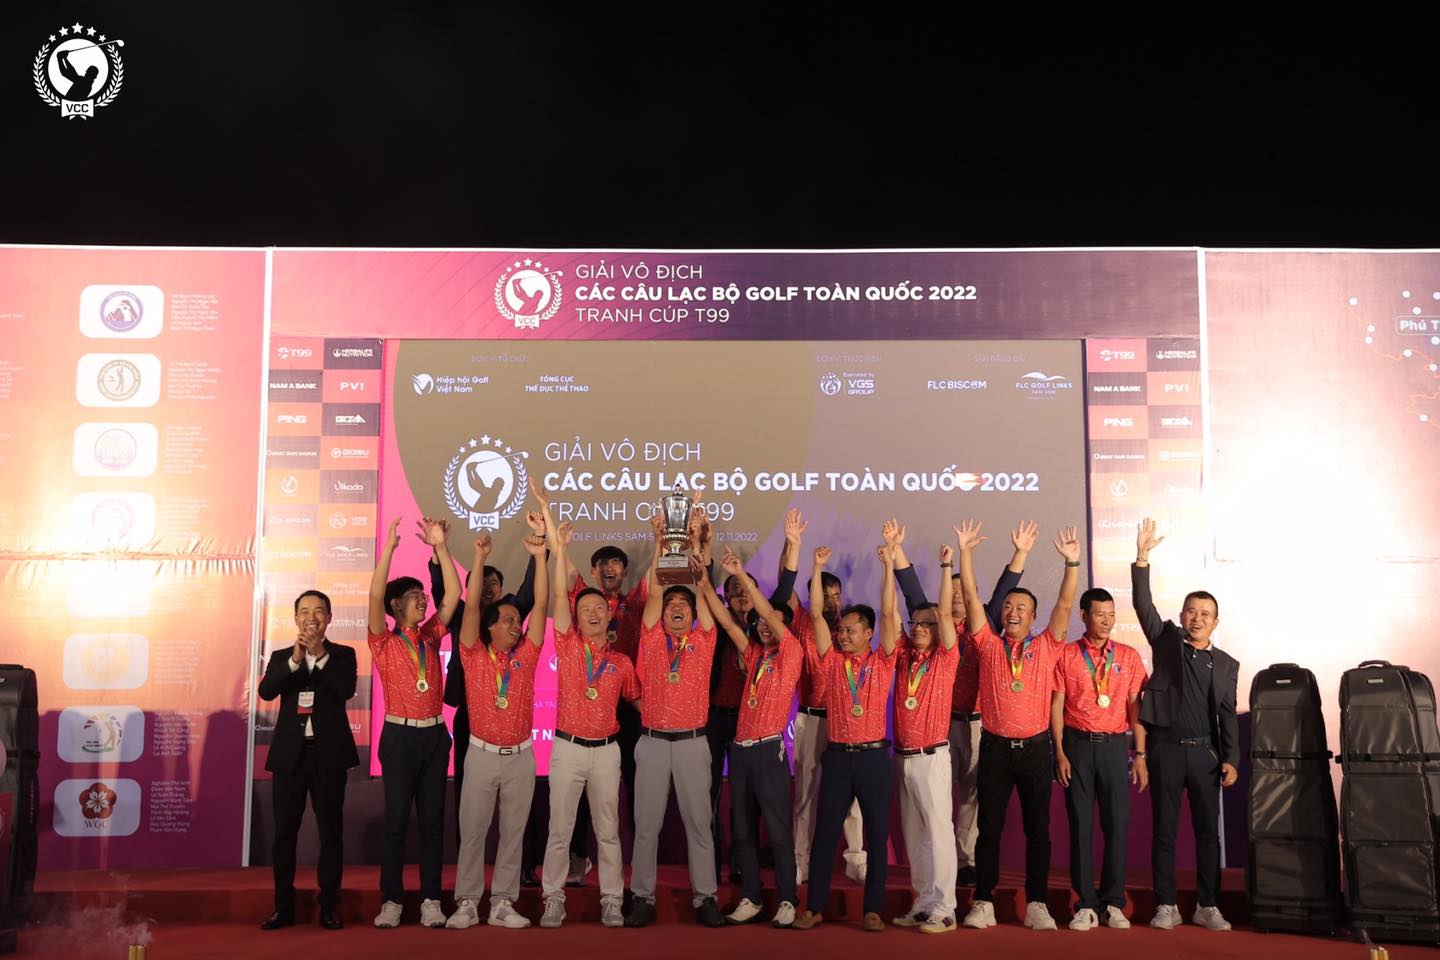 CLB họ Lê phía Nam và hội Golf Bà Rịa - Vũng Tàu trở thành tân vô địch giải đấu VCC 2022 - tranh Cup T99